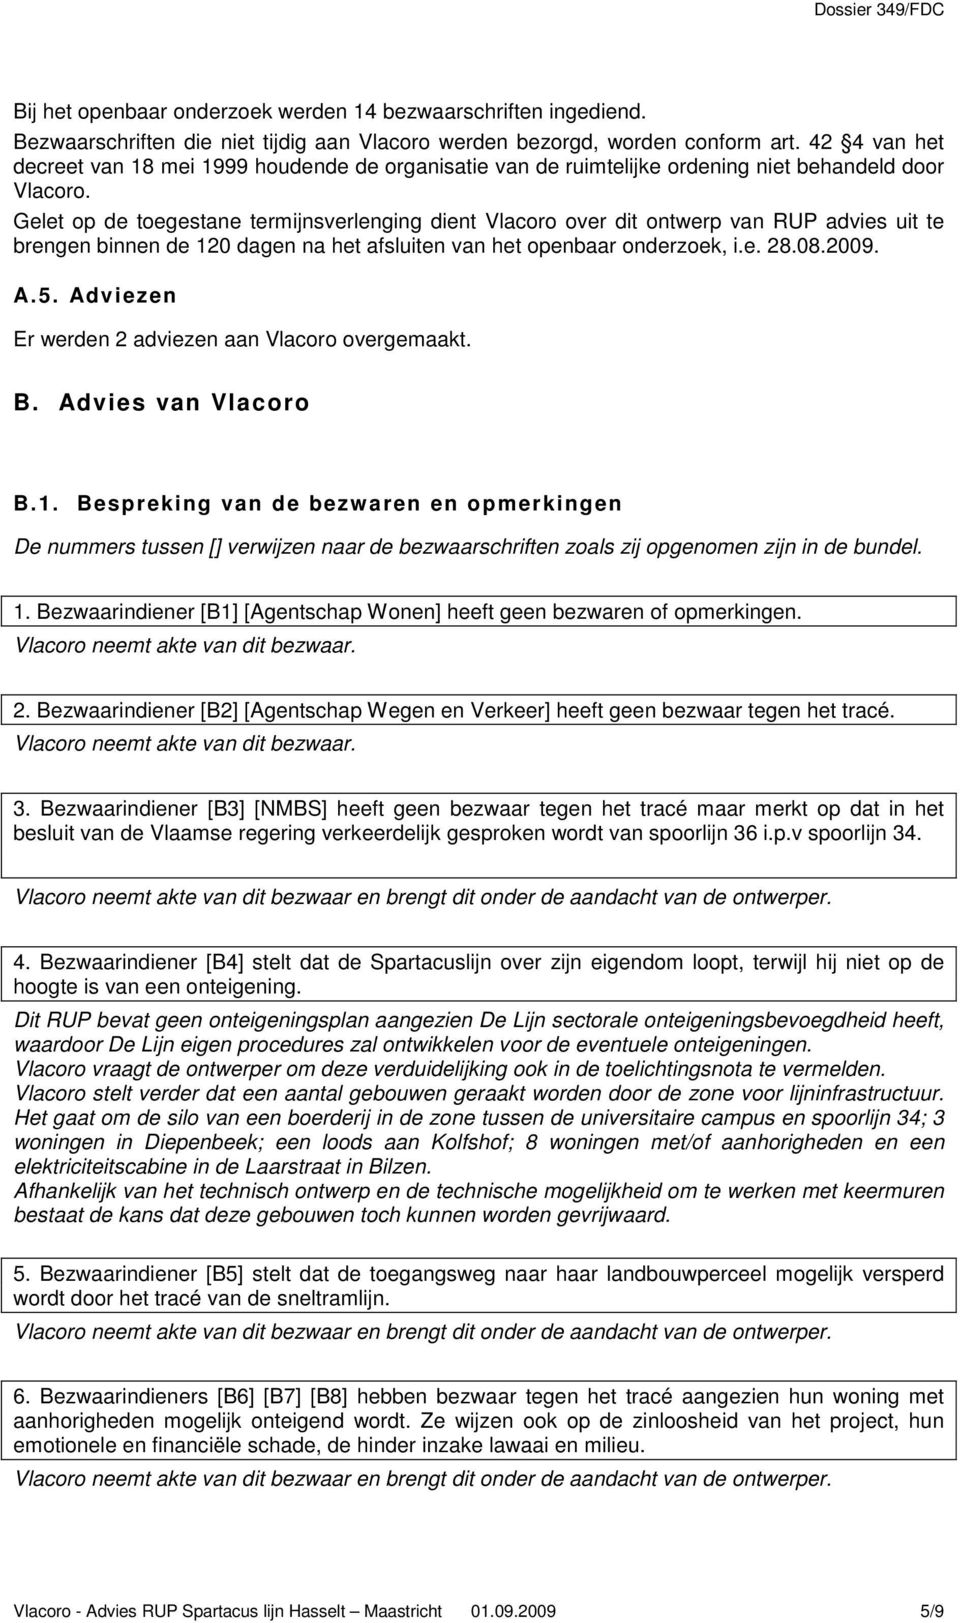 Gelet op de toegestane termijnsverlenging dient Vlacoro over dit ontwerp van RUP advies uit te brengen binnen de 120 dagen na het afsluiten van het openbaar onderzoek, i.e. 28.08.2009. A.5.